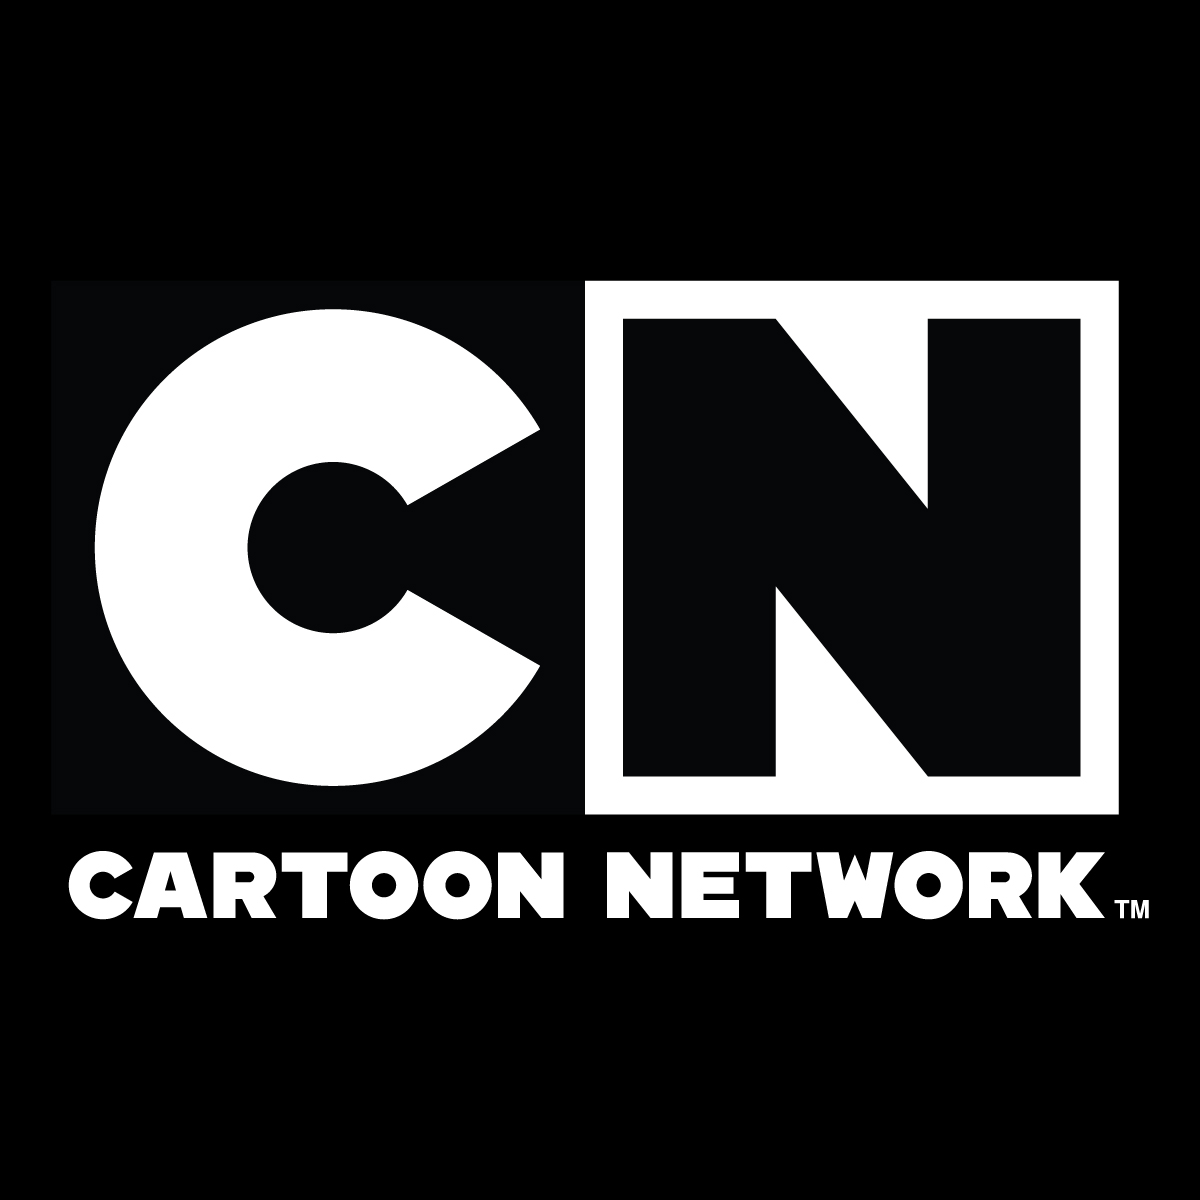 DSTV’s Cartoon Network Denies Broadcasting Indecent Cartoon